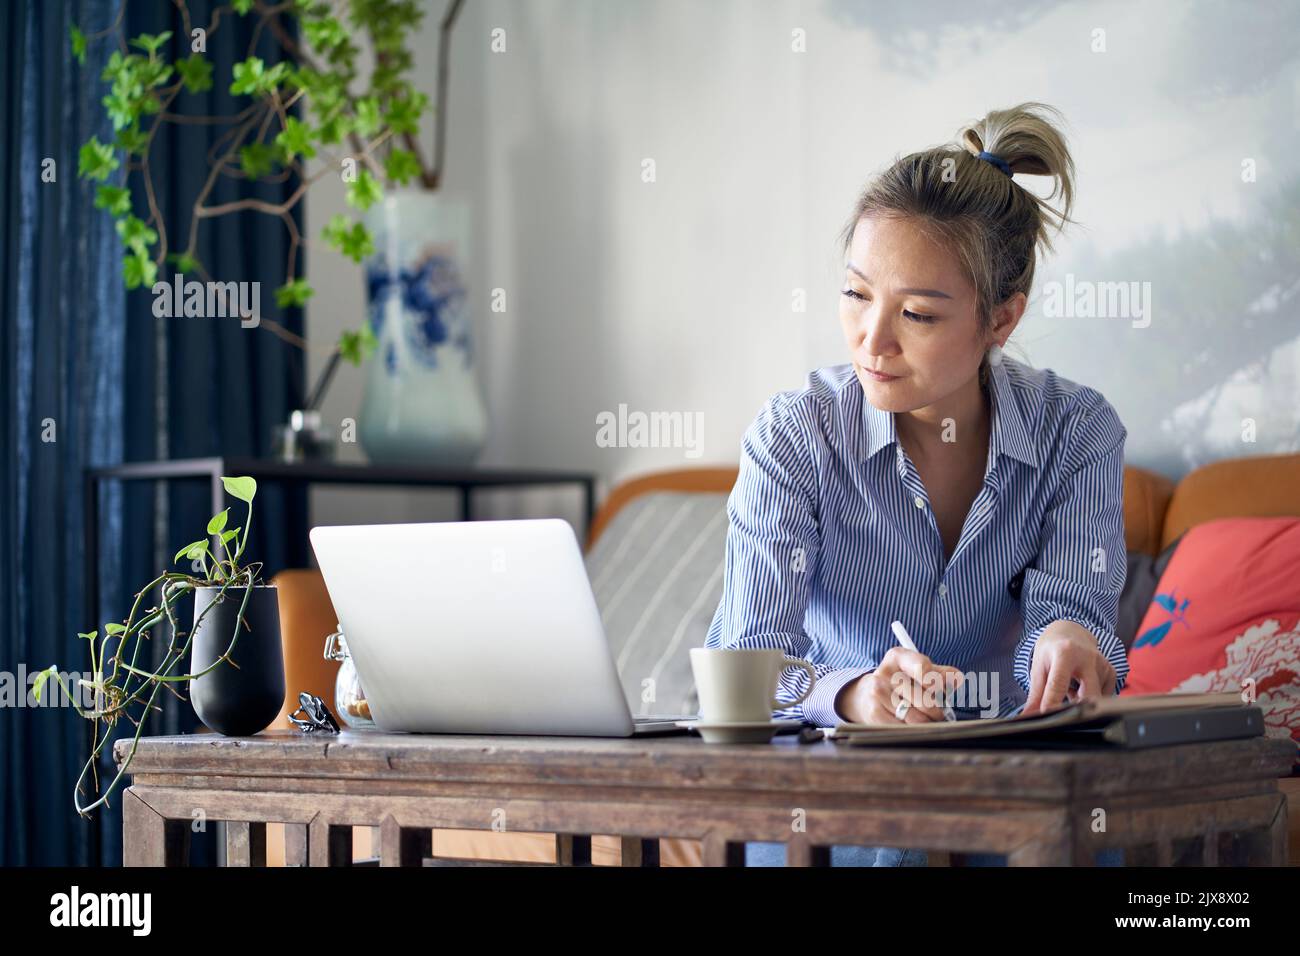 donna asiatica matura e professionale che lavora da casa prendendo appunti mentre guarda il computer portatile Foto Stock